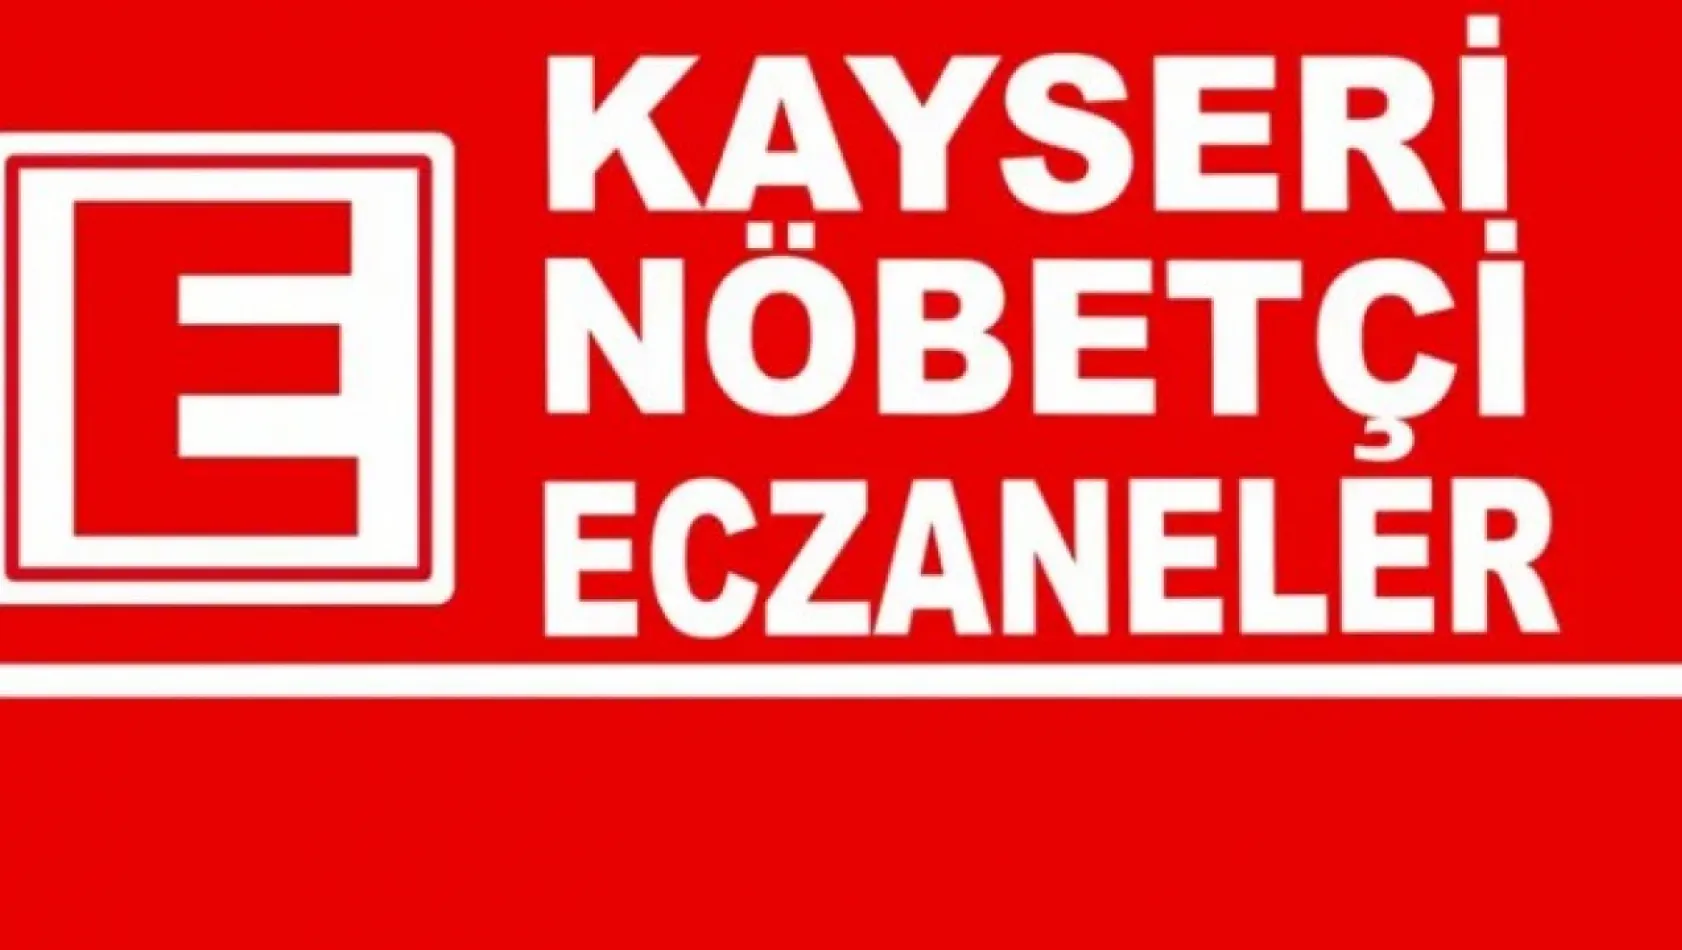 Bugün Kayseri'de nöbetçi eczaneler